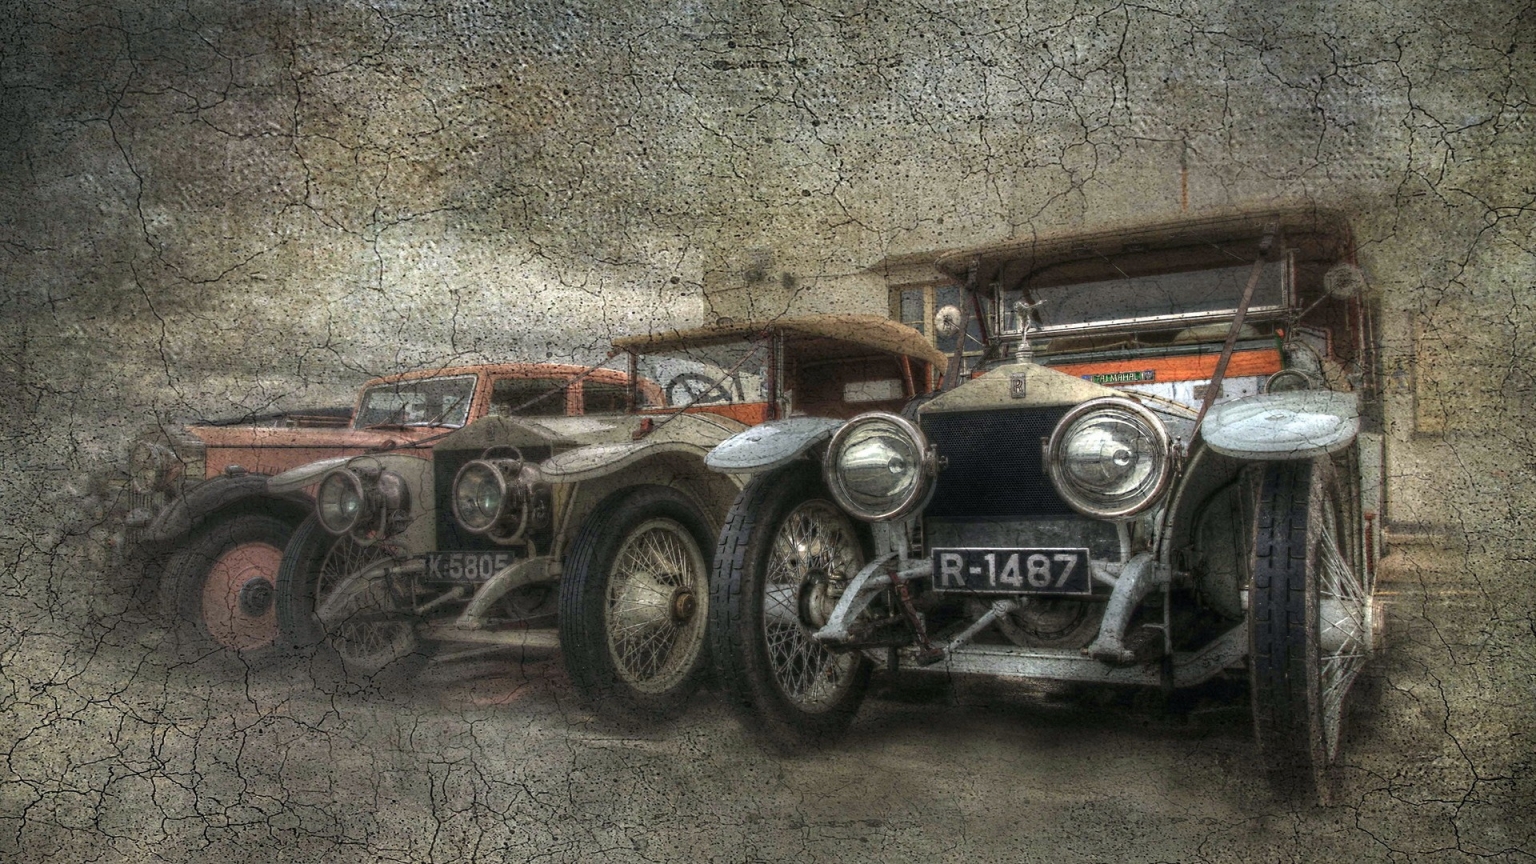 Vintage Car Poster for 1536 x 864 HDTV resolution